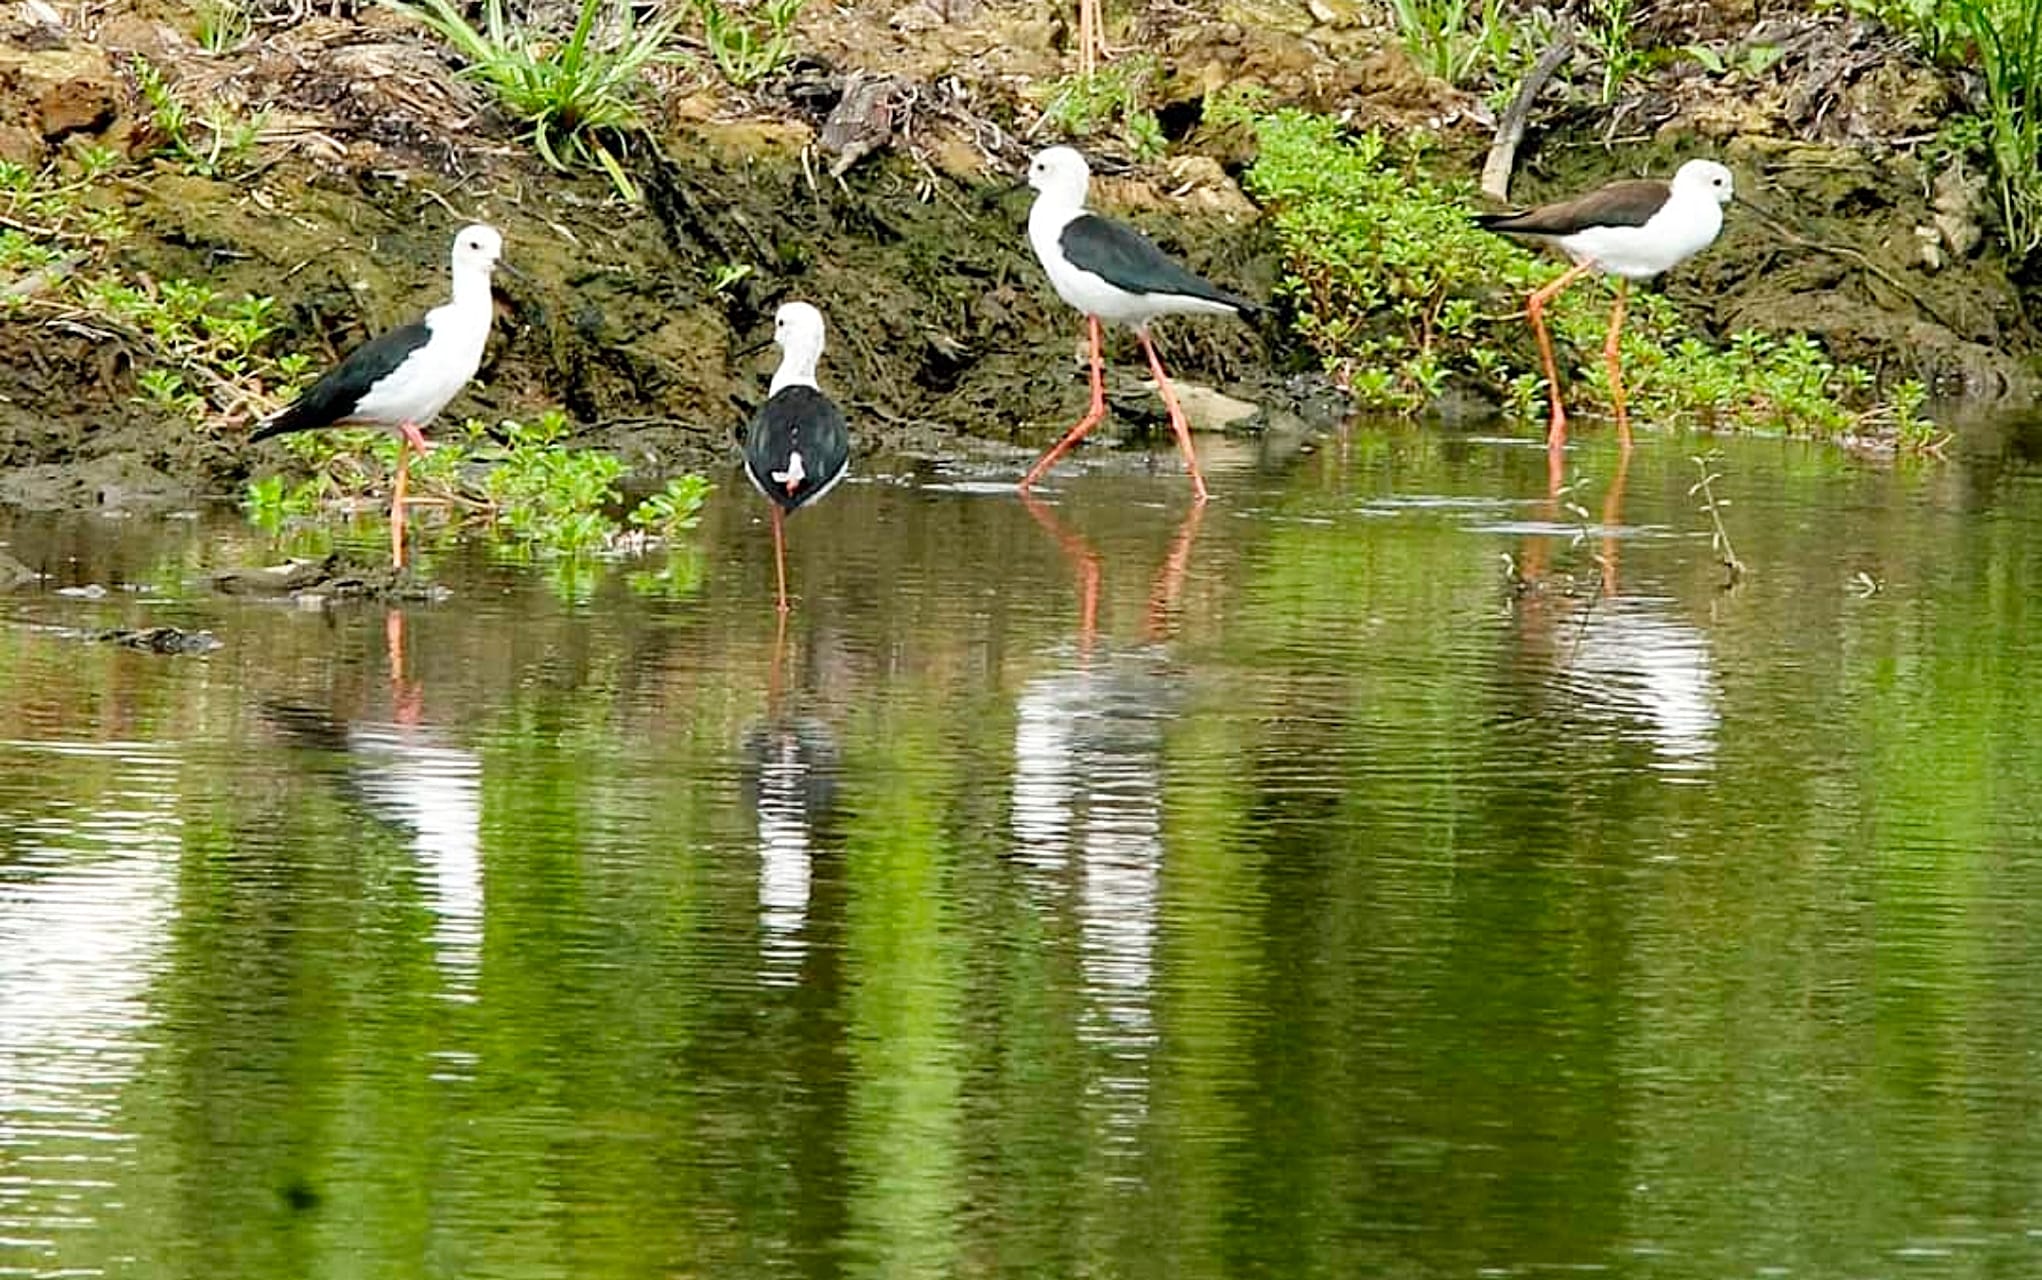 สำรวจ “นก” ใน “พื้นที่ชุ่มน้ำบึงขุนทะเล” พัฒนาสู่แหล่งเรียนรู้-แหล่งท่องเที่ยวเชิงอนุรักษ์